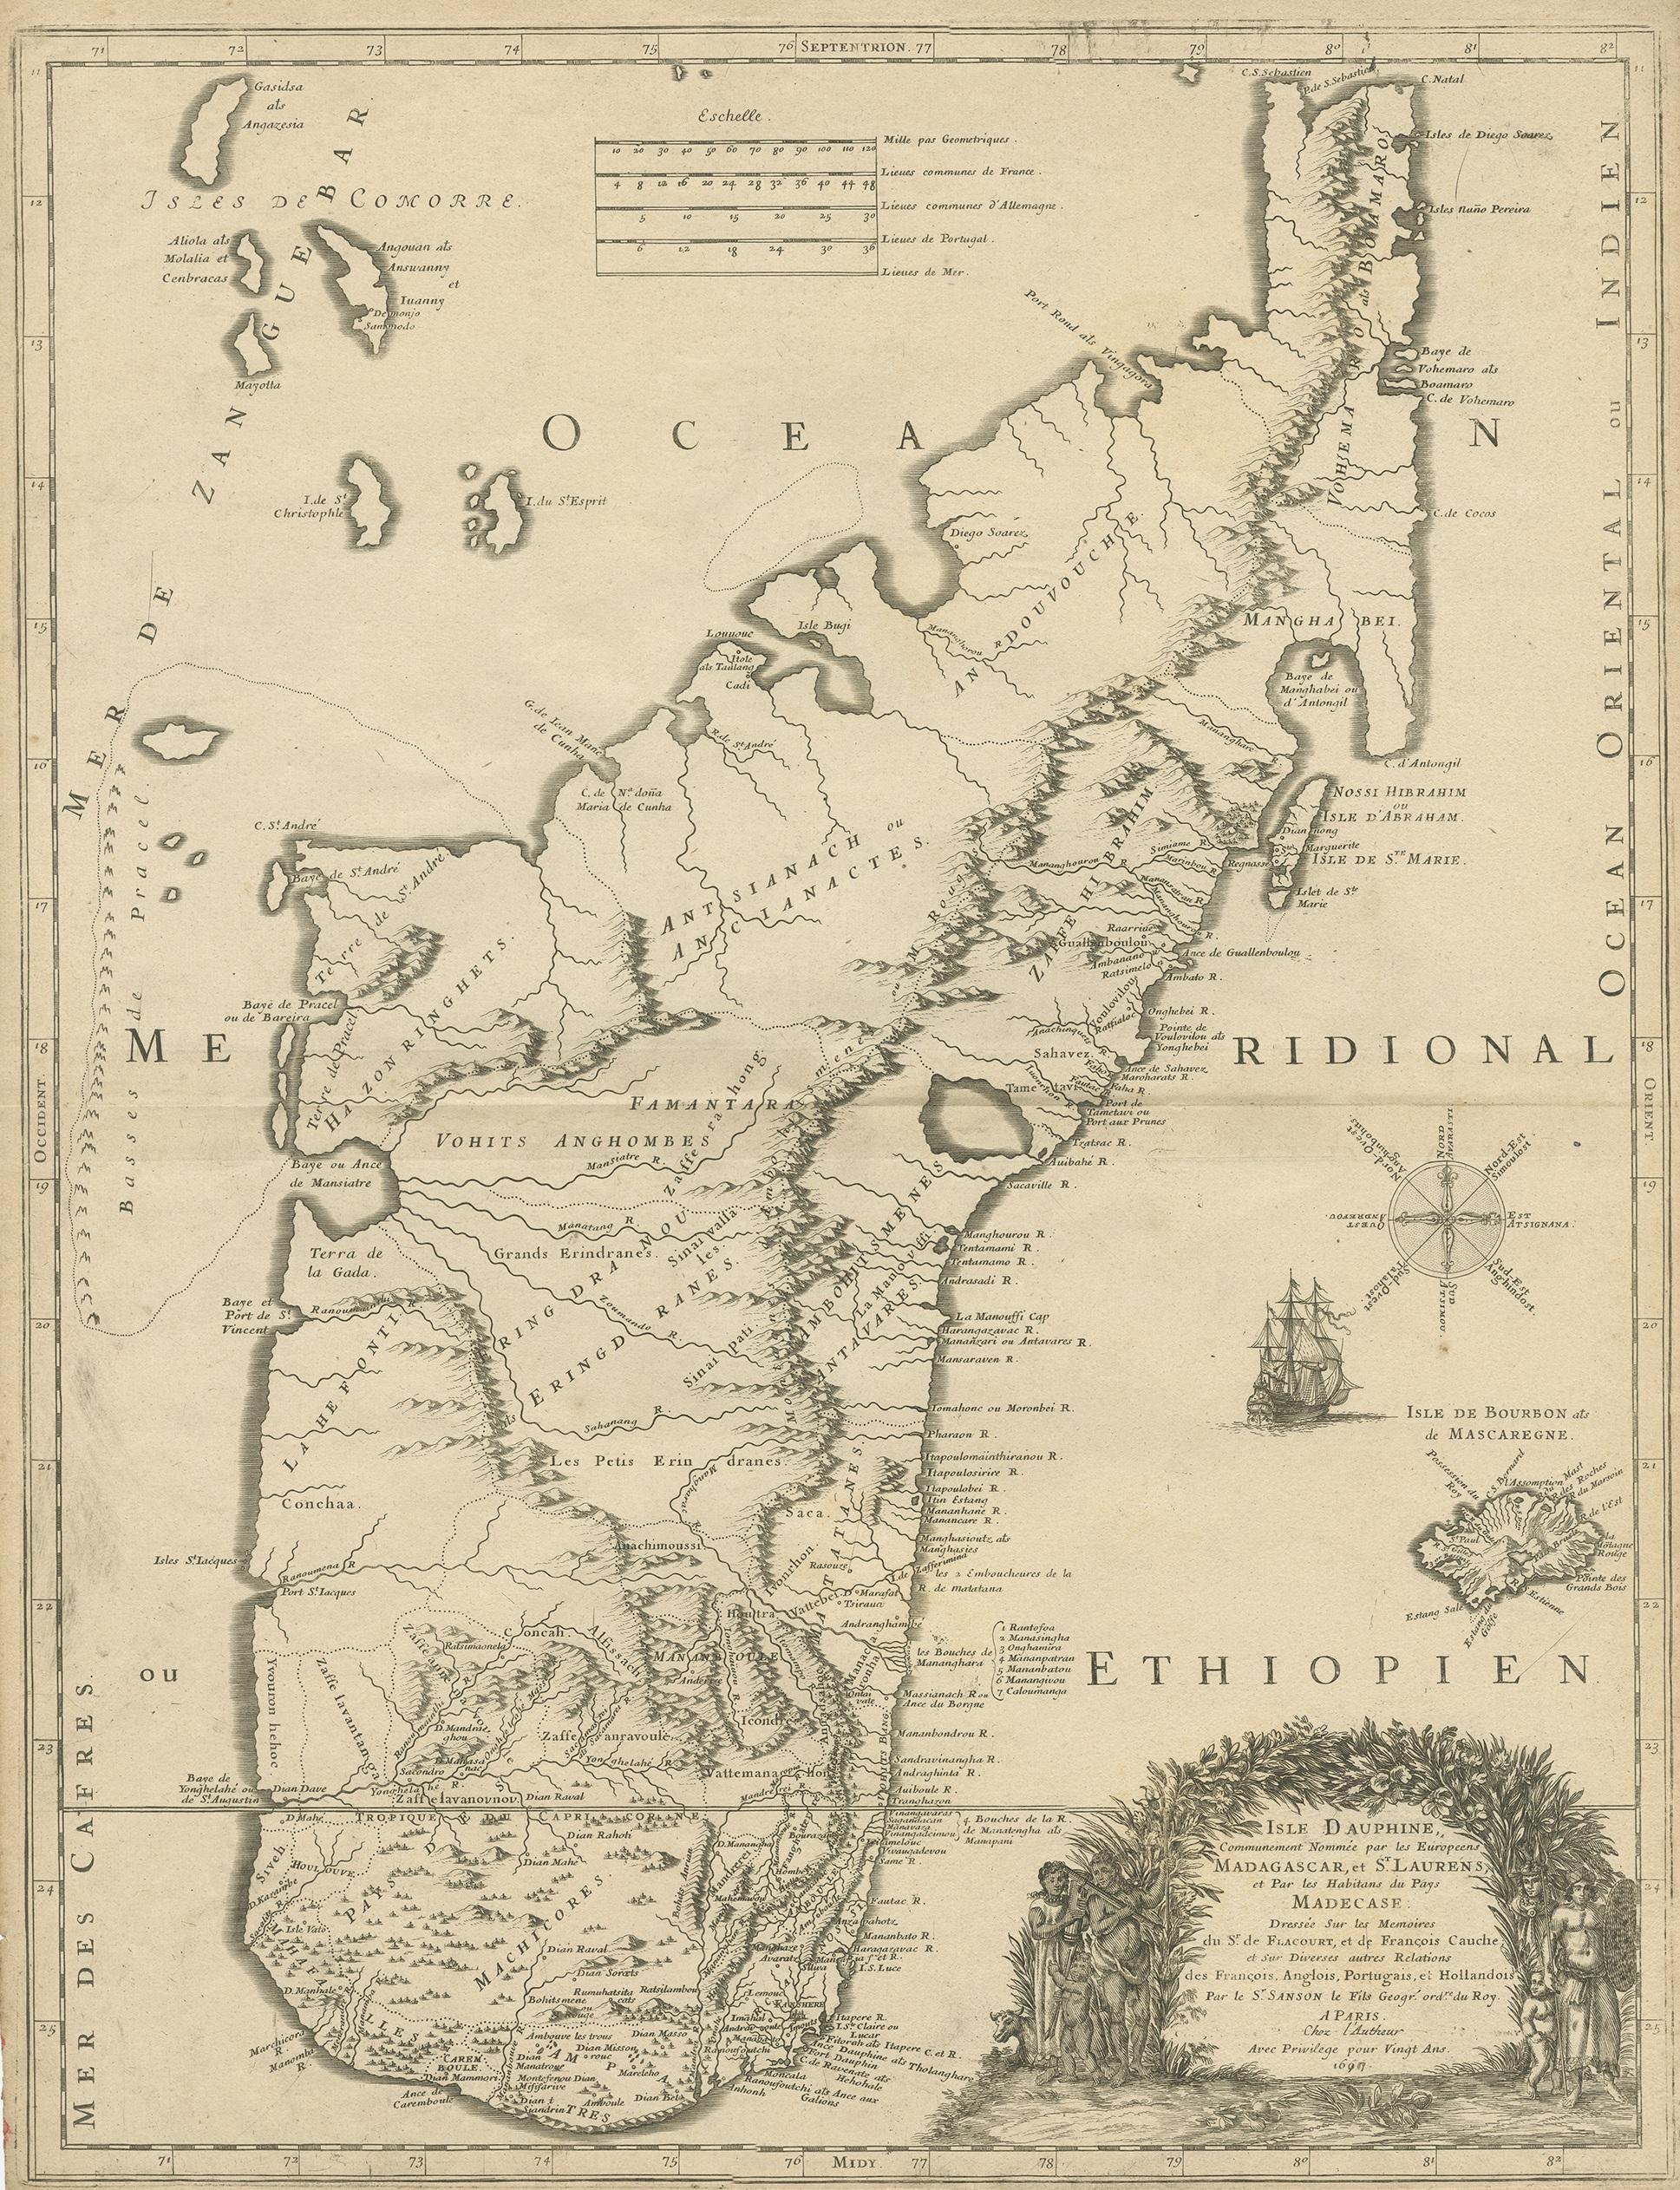 Antique map titled 'Isle Dauphine communement nommée par les Europeens Madagascar, et St. Laurens (..)'. Original large-scale antique map of Madagascar, Africa. Published by Pierre Mariette, circa 1670.